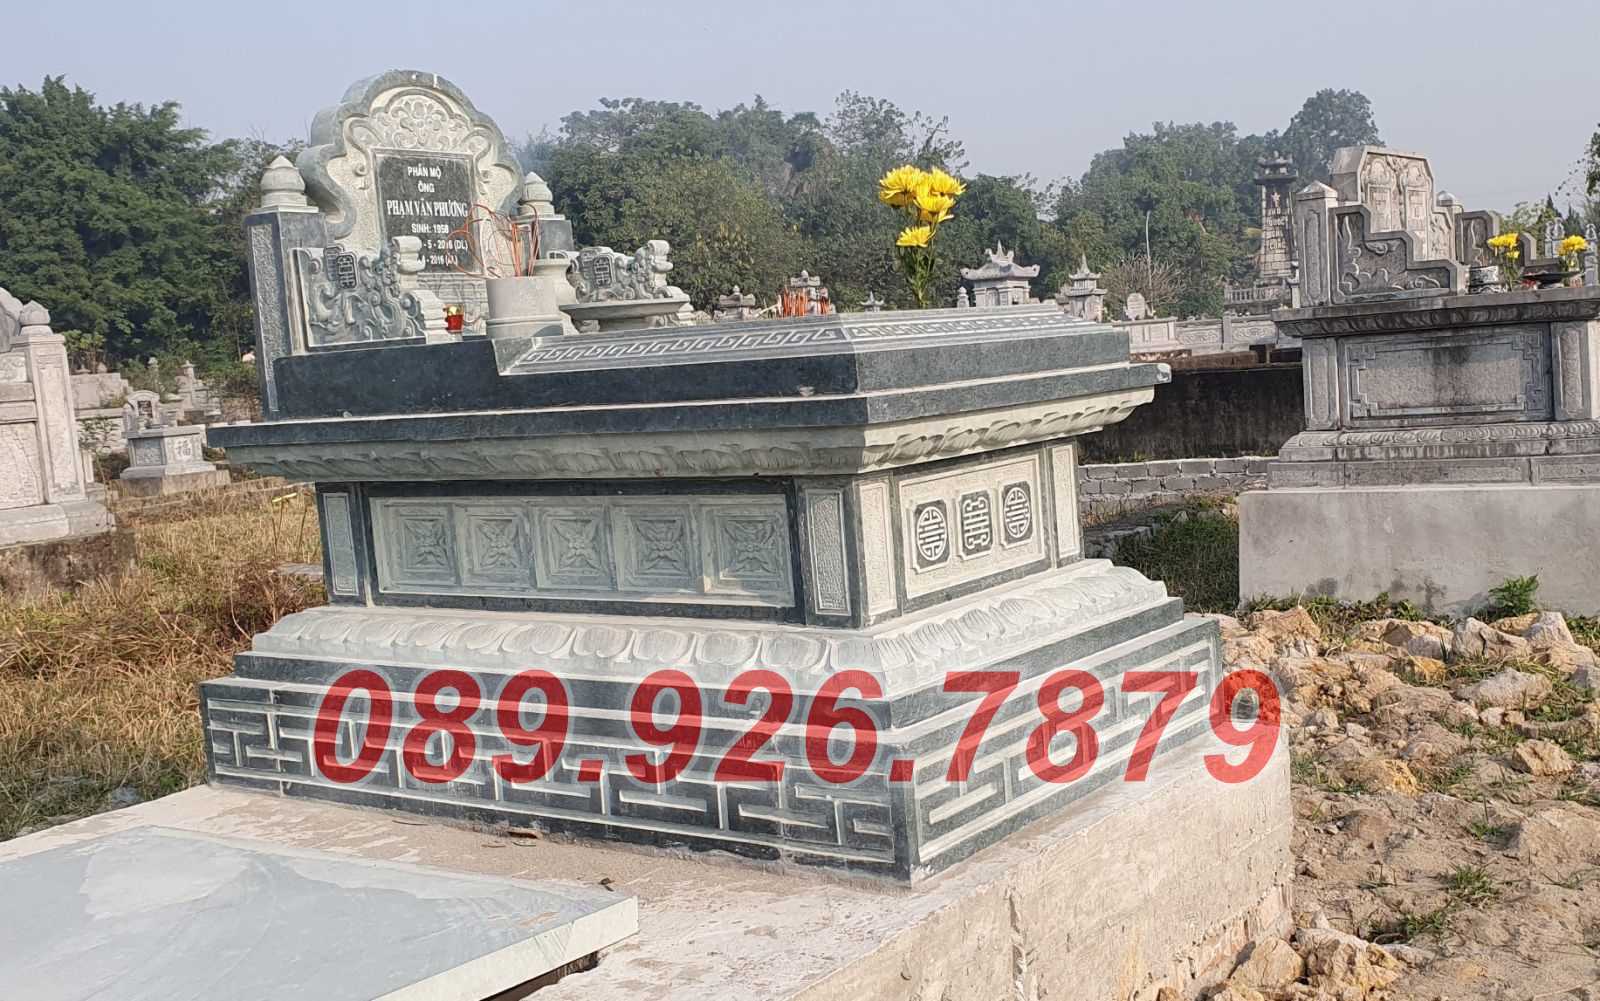 Mẫu mộ đá granite đẹp bán Hồ Chí Minh - Mộ đá hoa cương đẹp